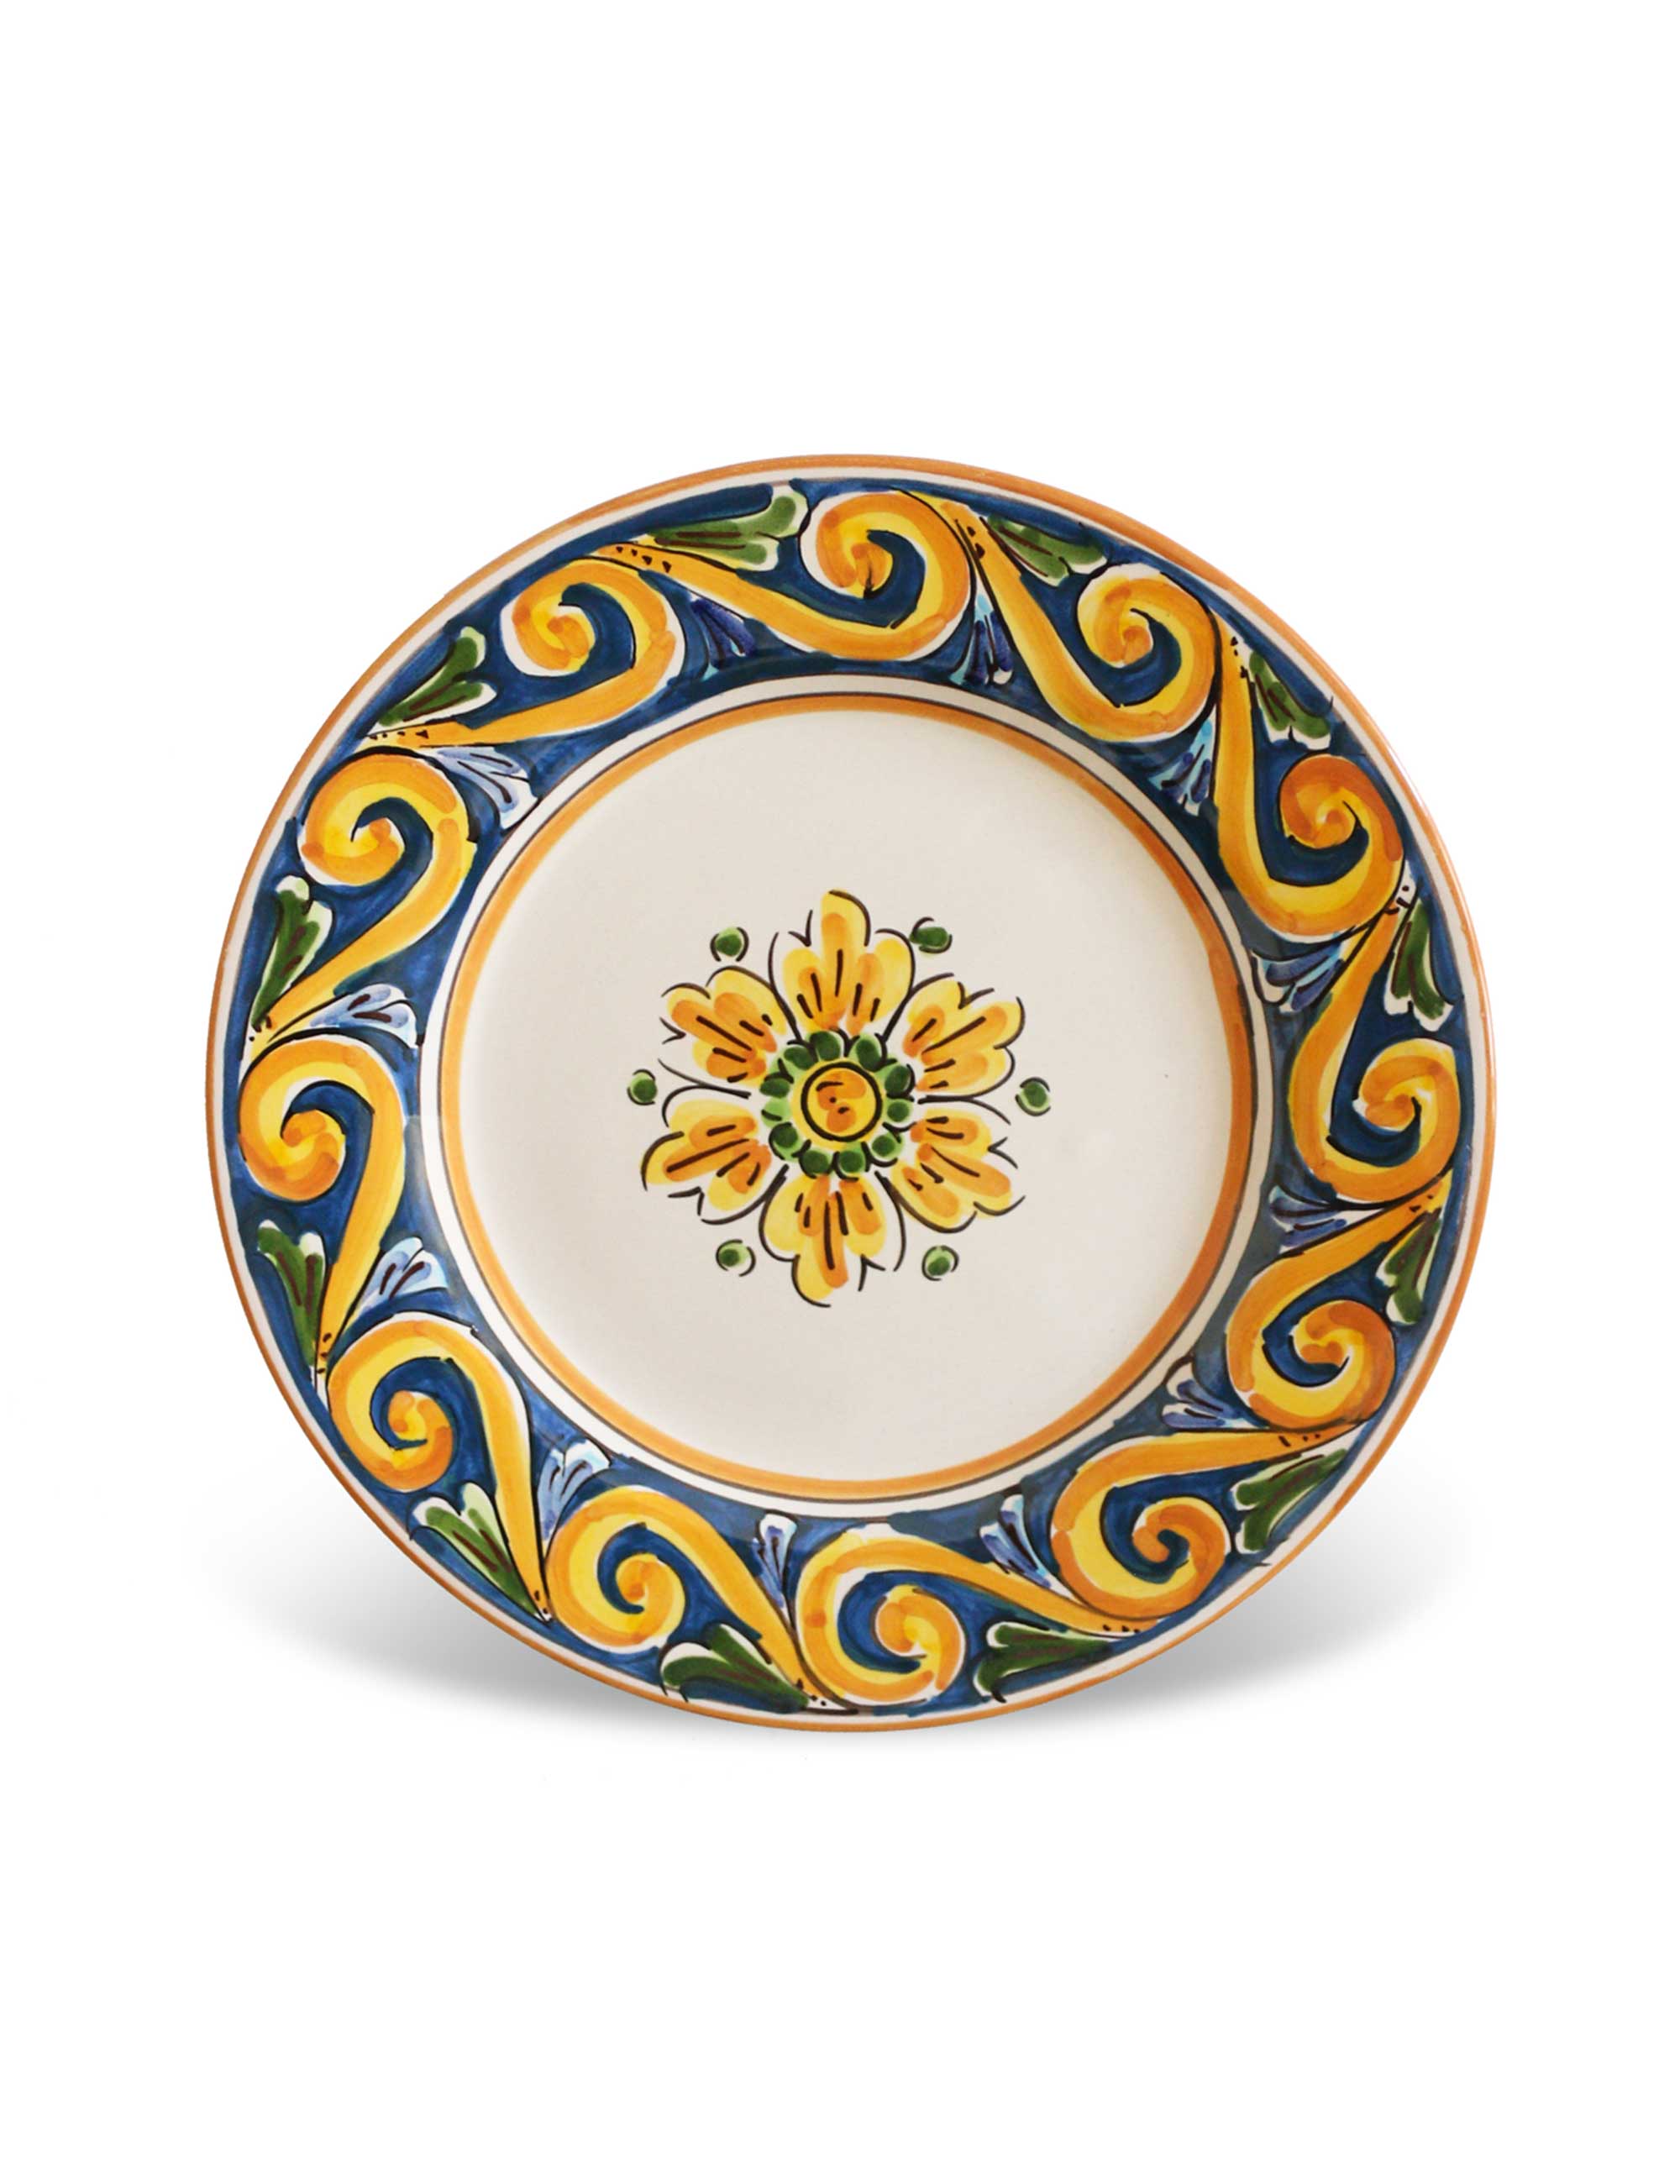 Caltagirone decorated ceramic dessert plate